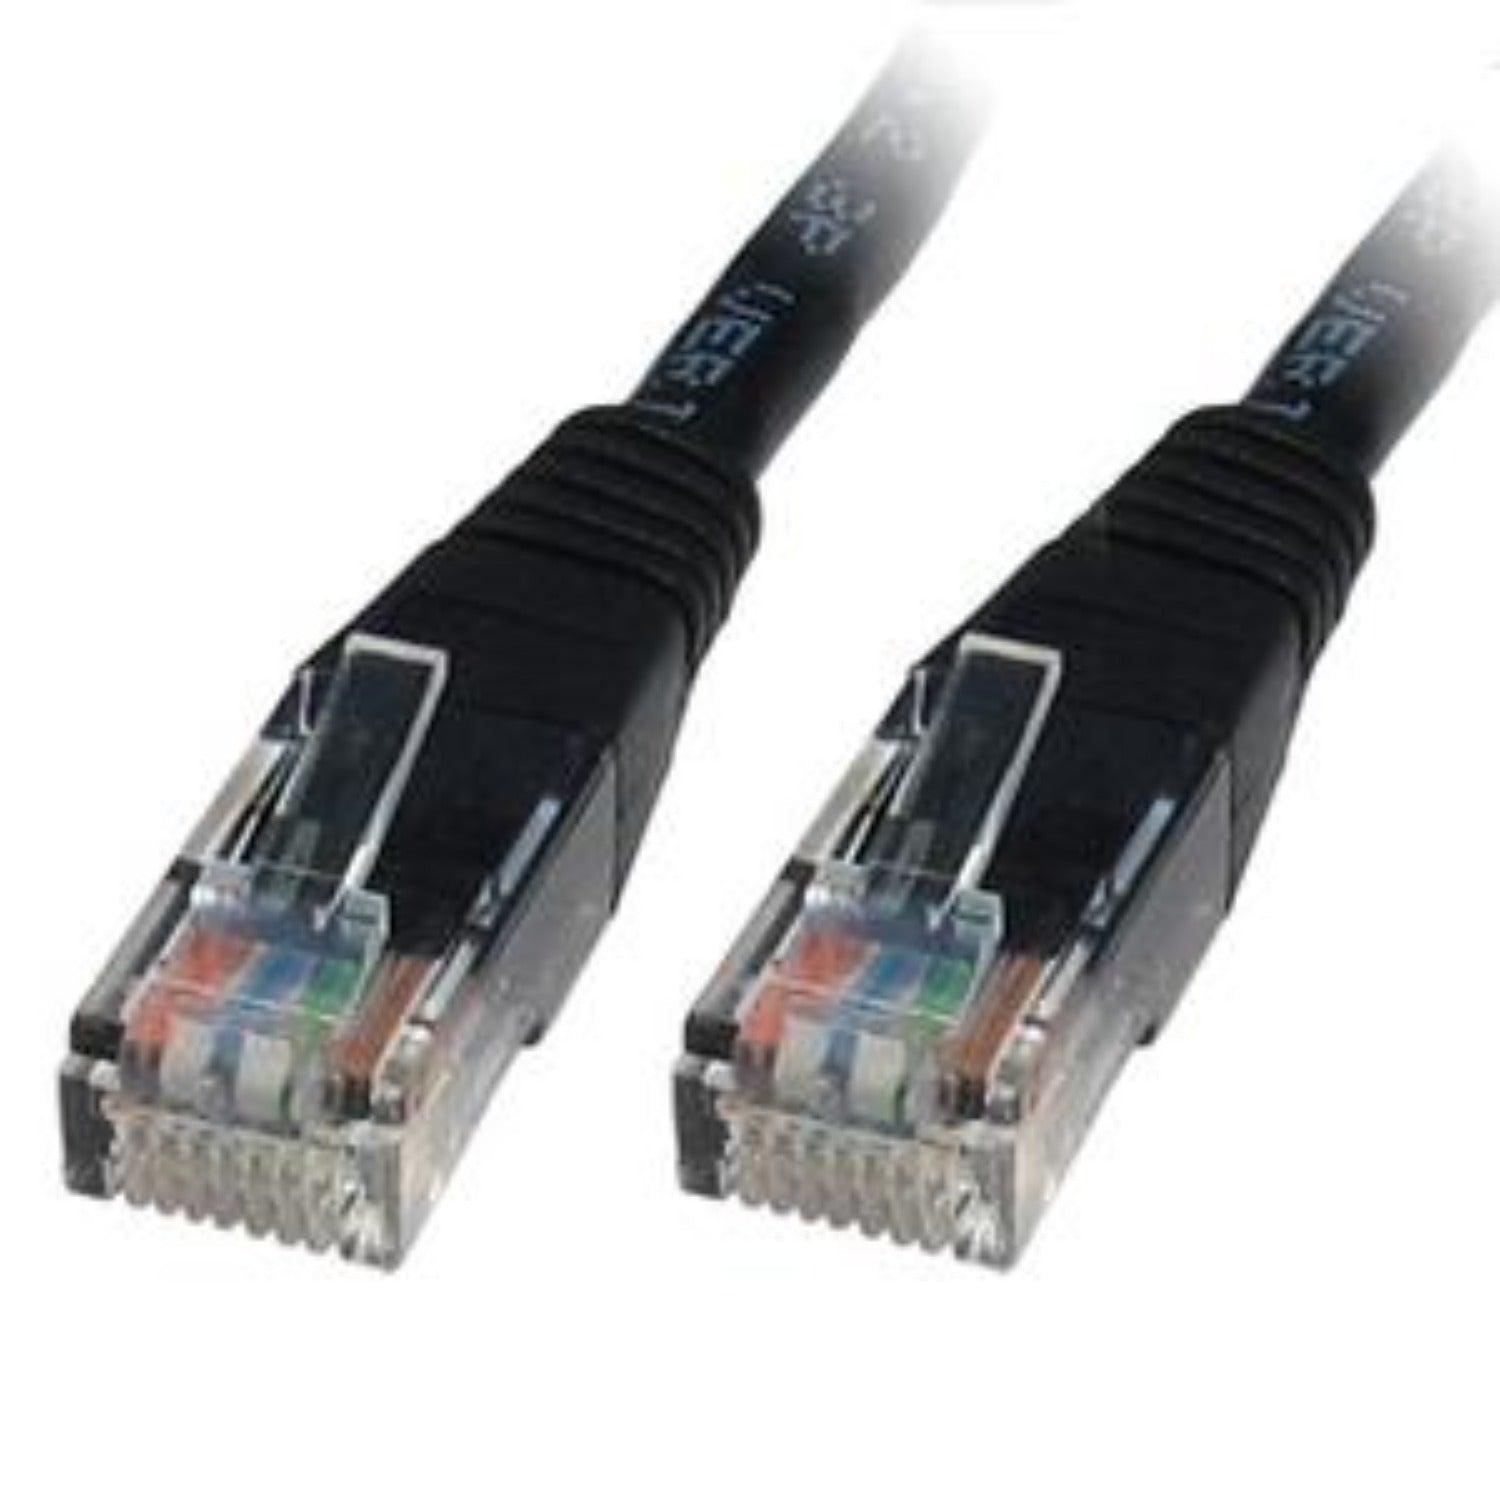 2.0m LMS Data Ethernet Cat5e RJ45 UTP Patch cable cord, LAN 10/100/1000Mbit/s Cable suitable